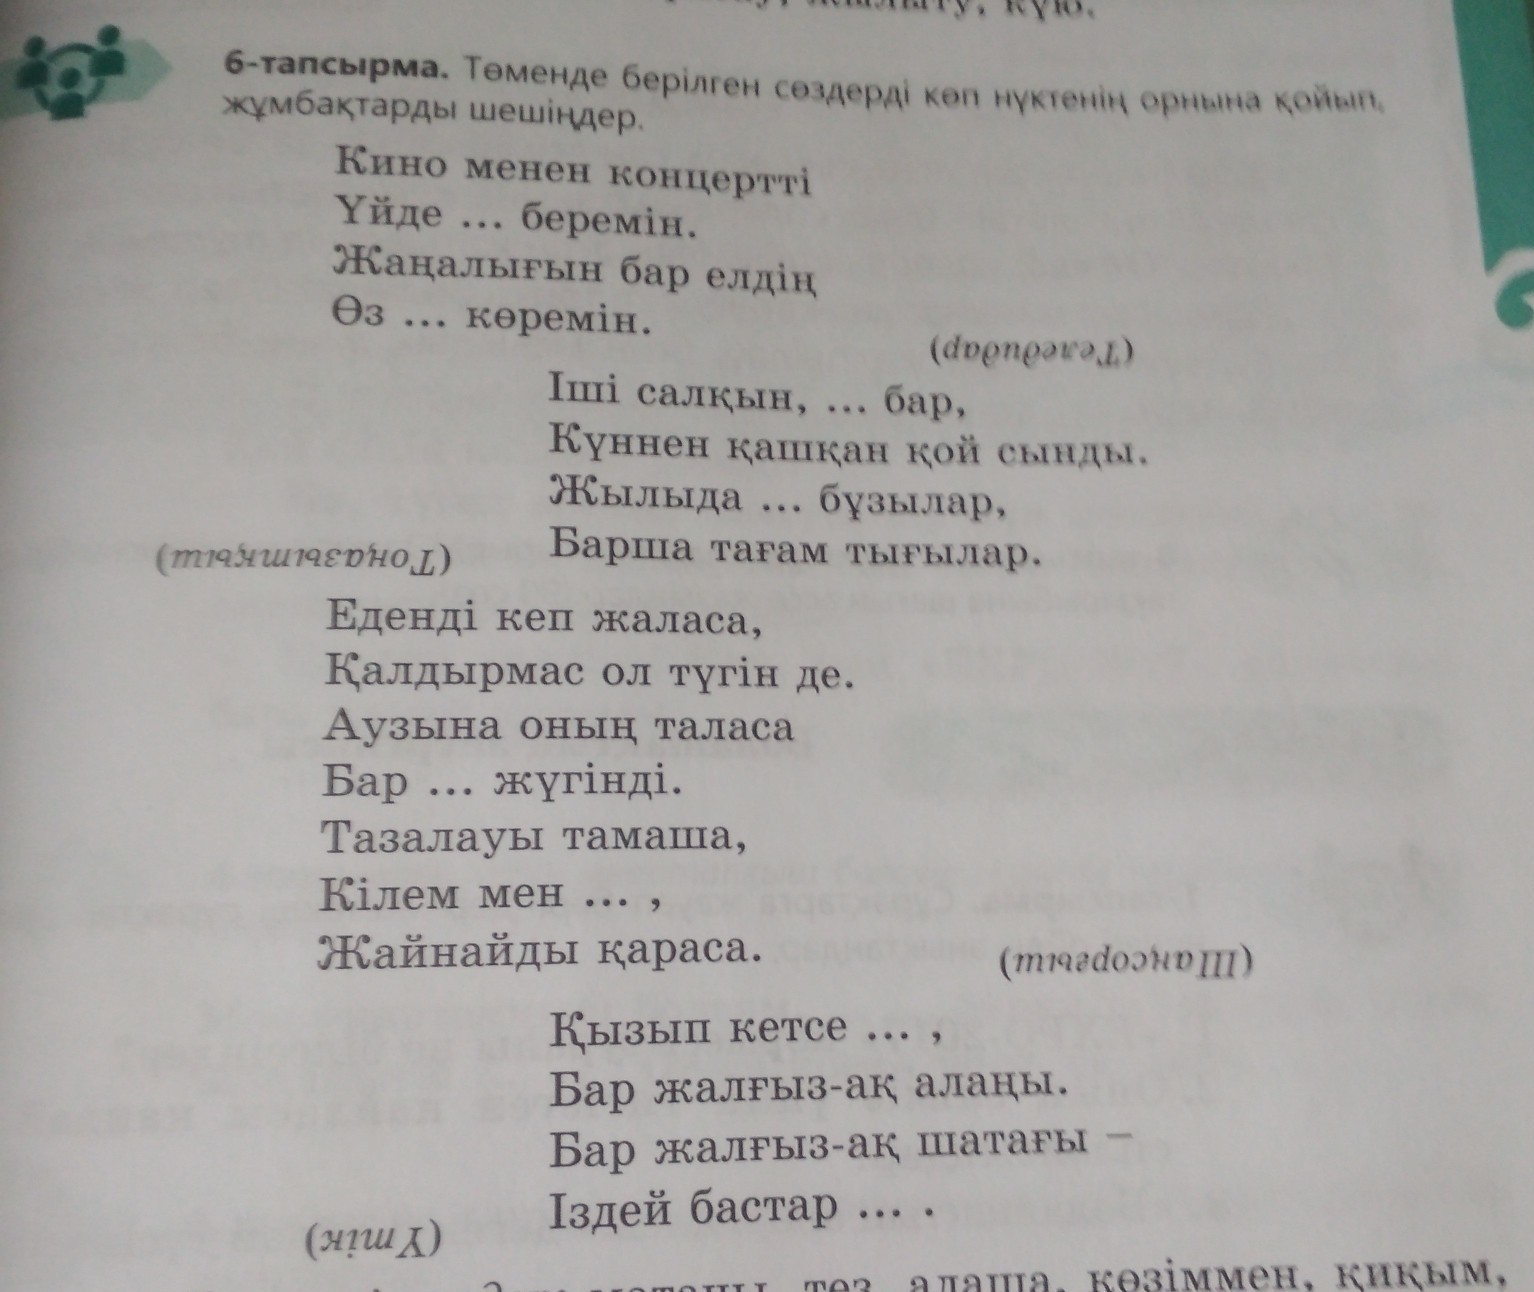 Объяснить казахское слова ижтиһад по смыслу